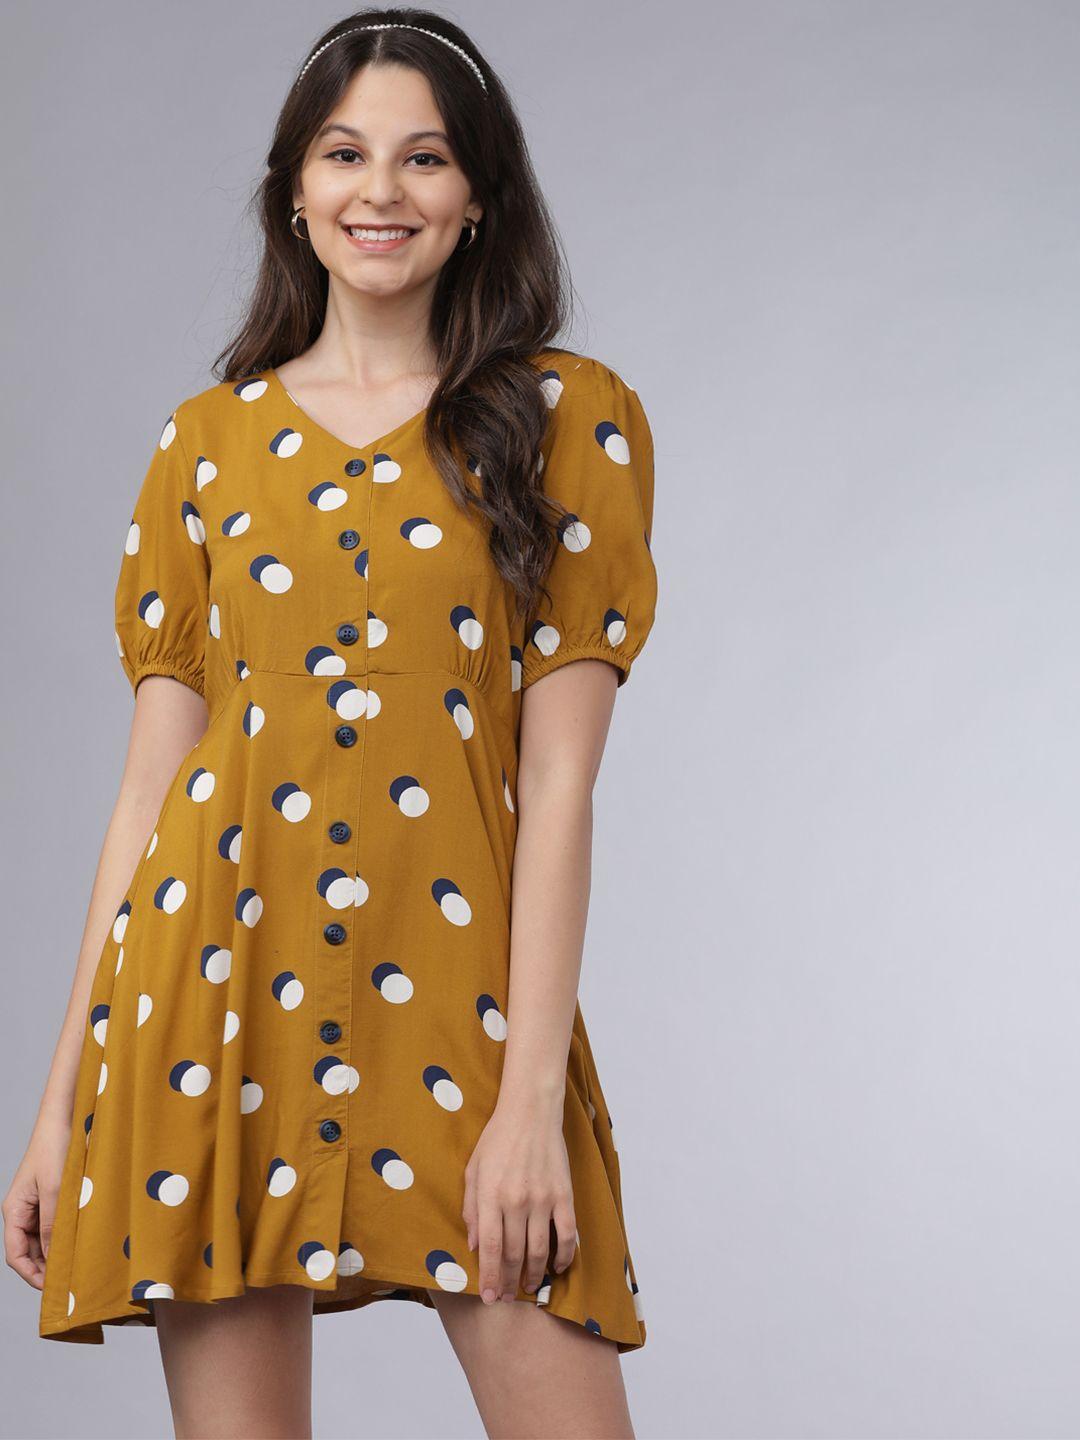 tokyo talkies women mustard yellow & white polka dots print a-line dress